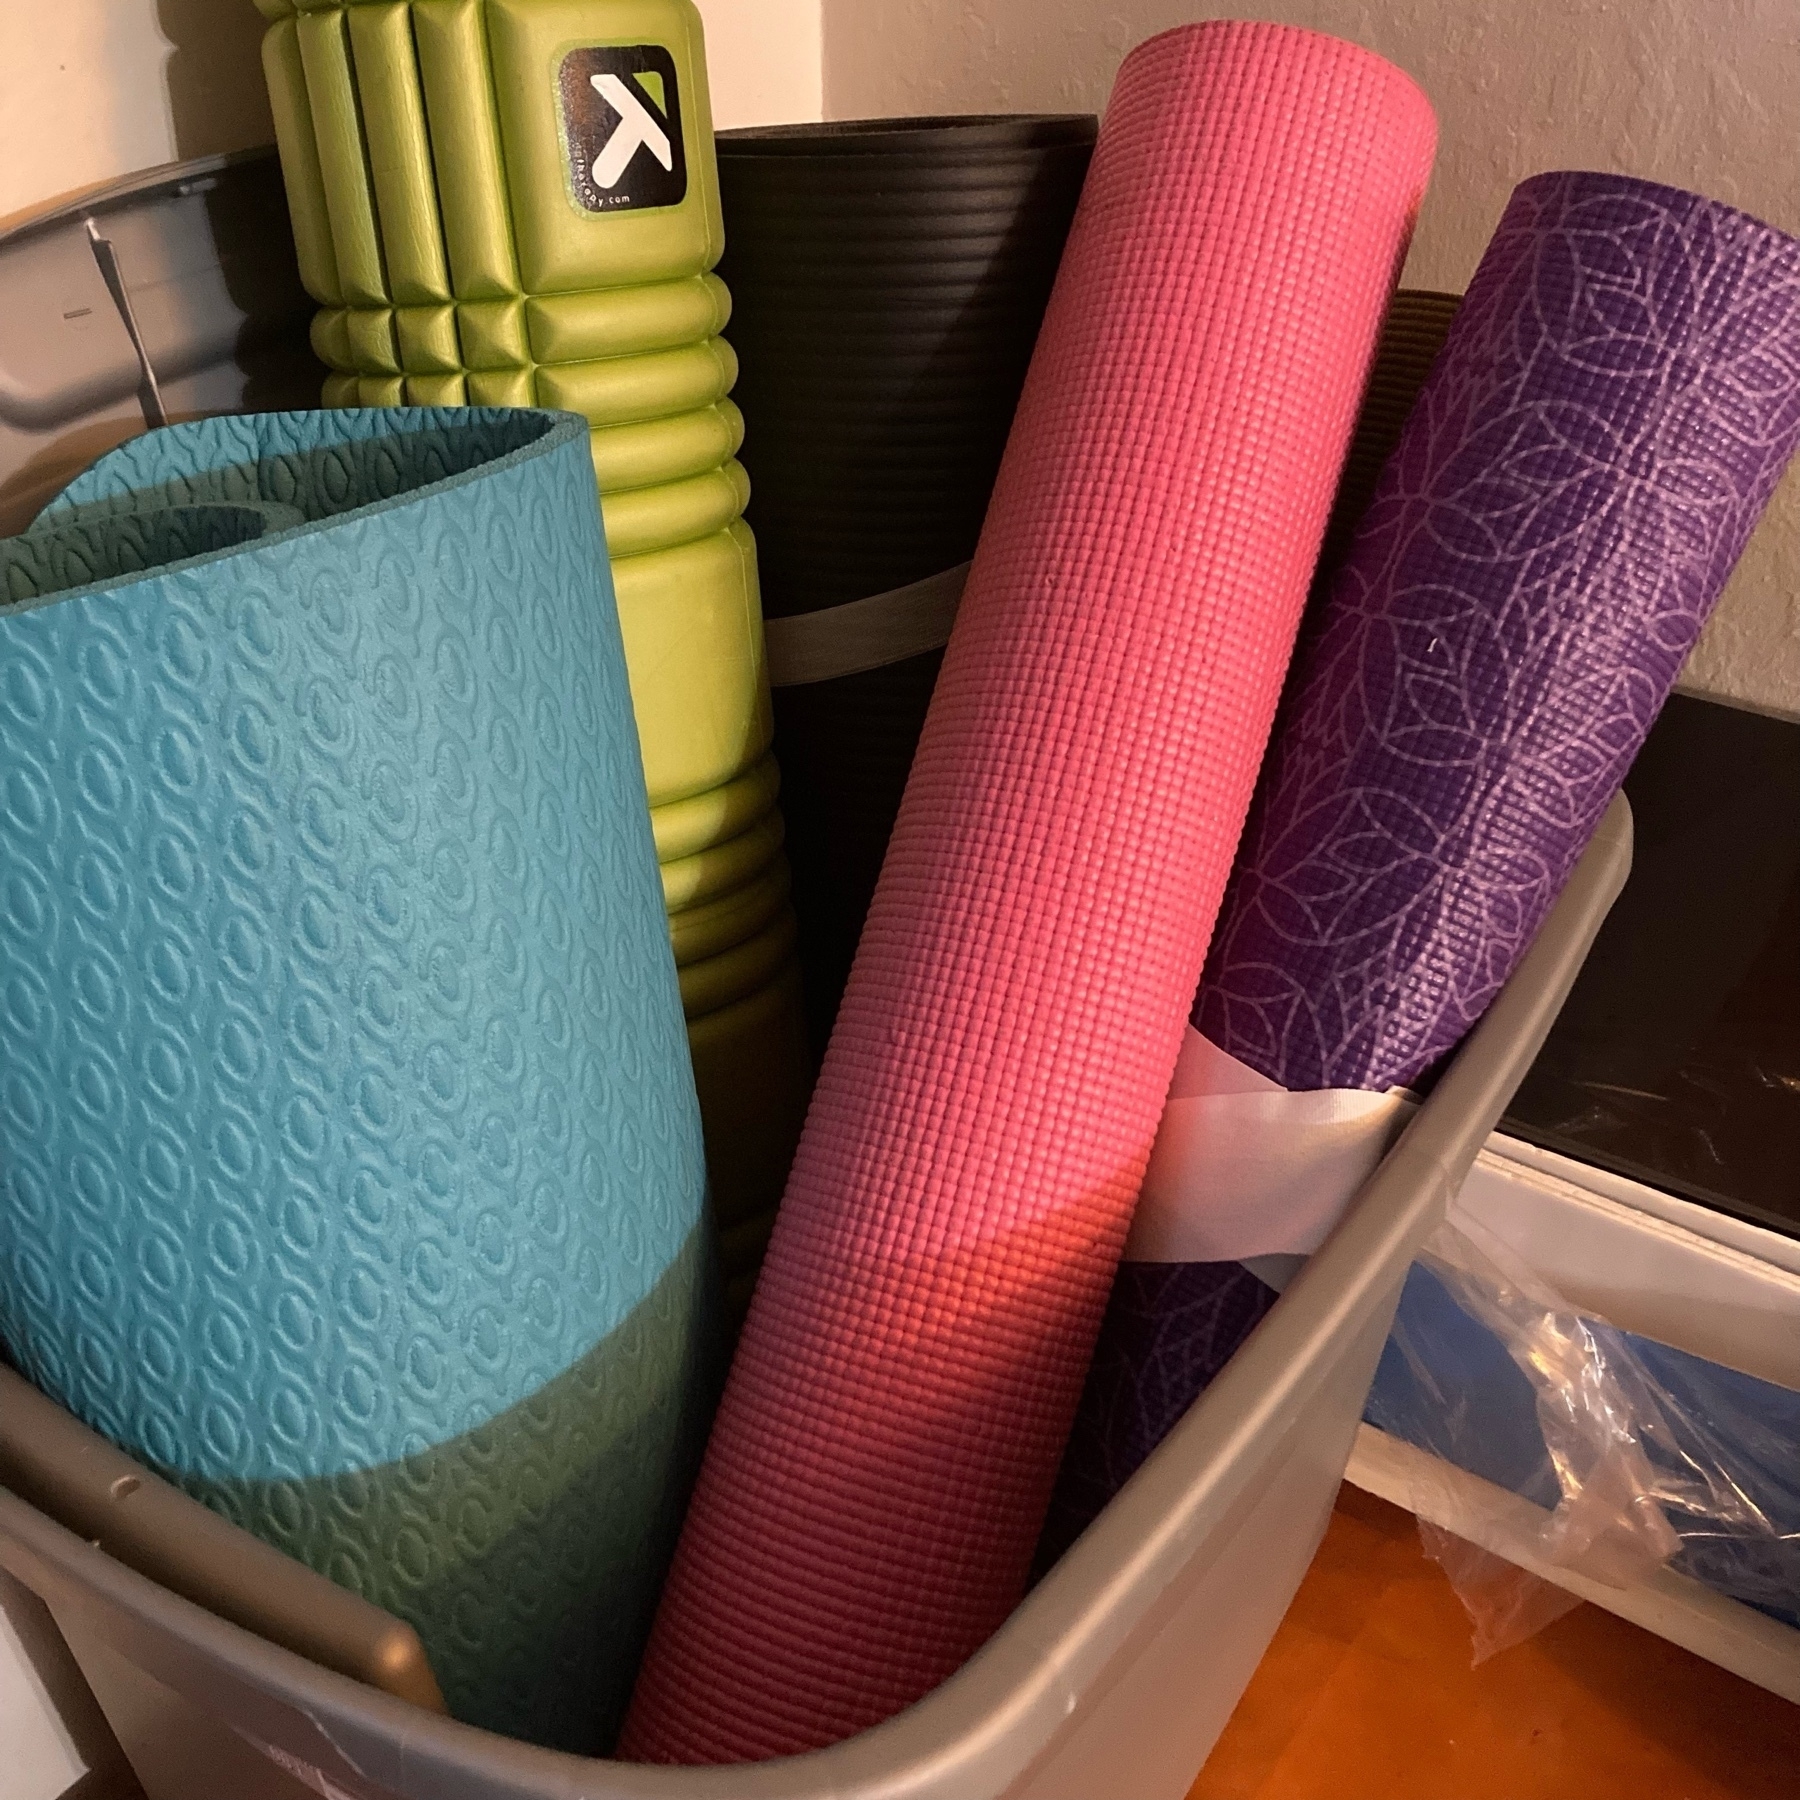 Yoga mats in a bin. 